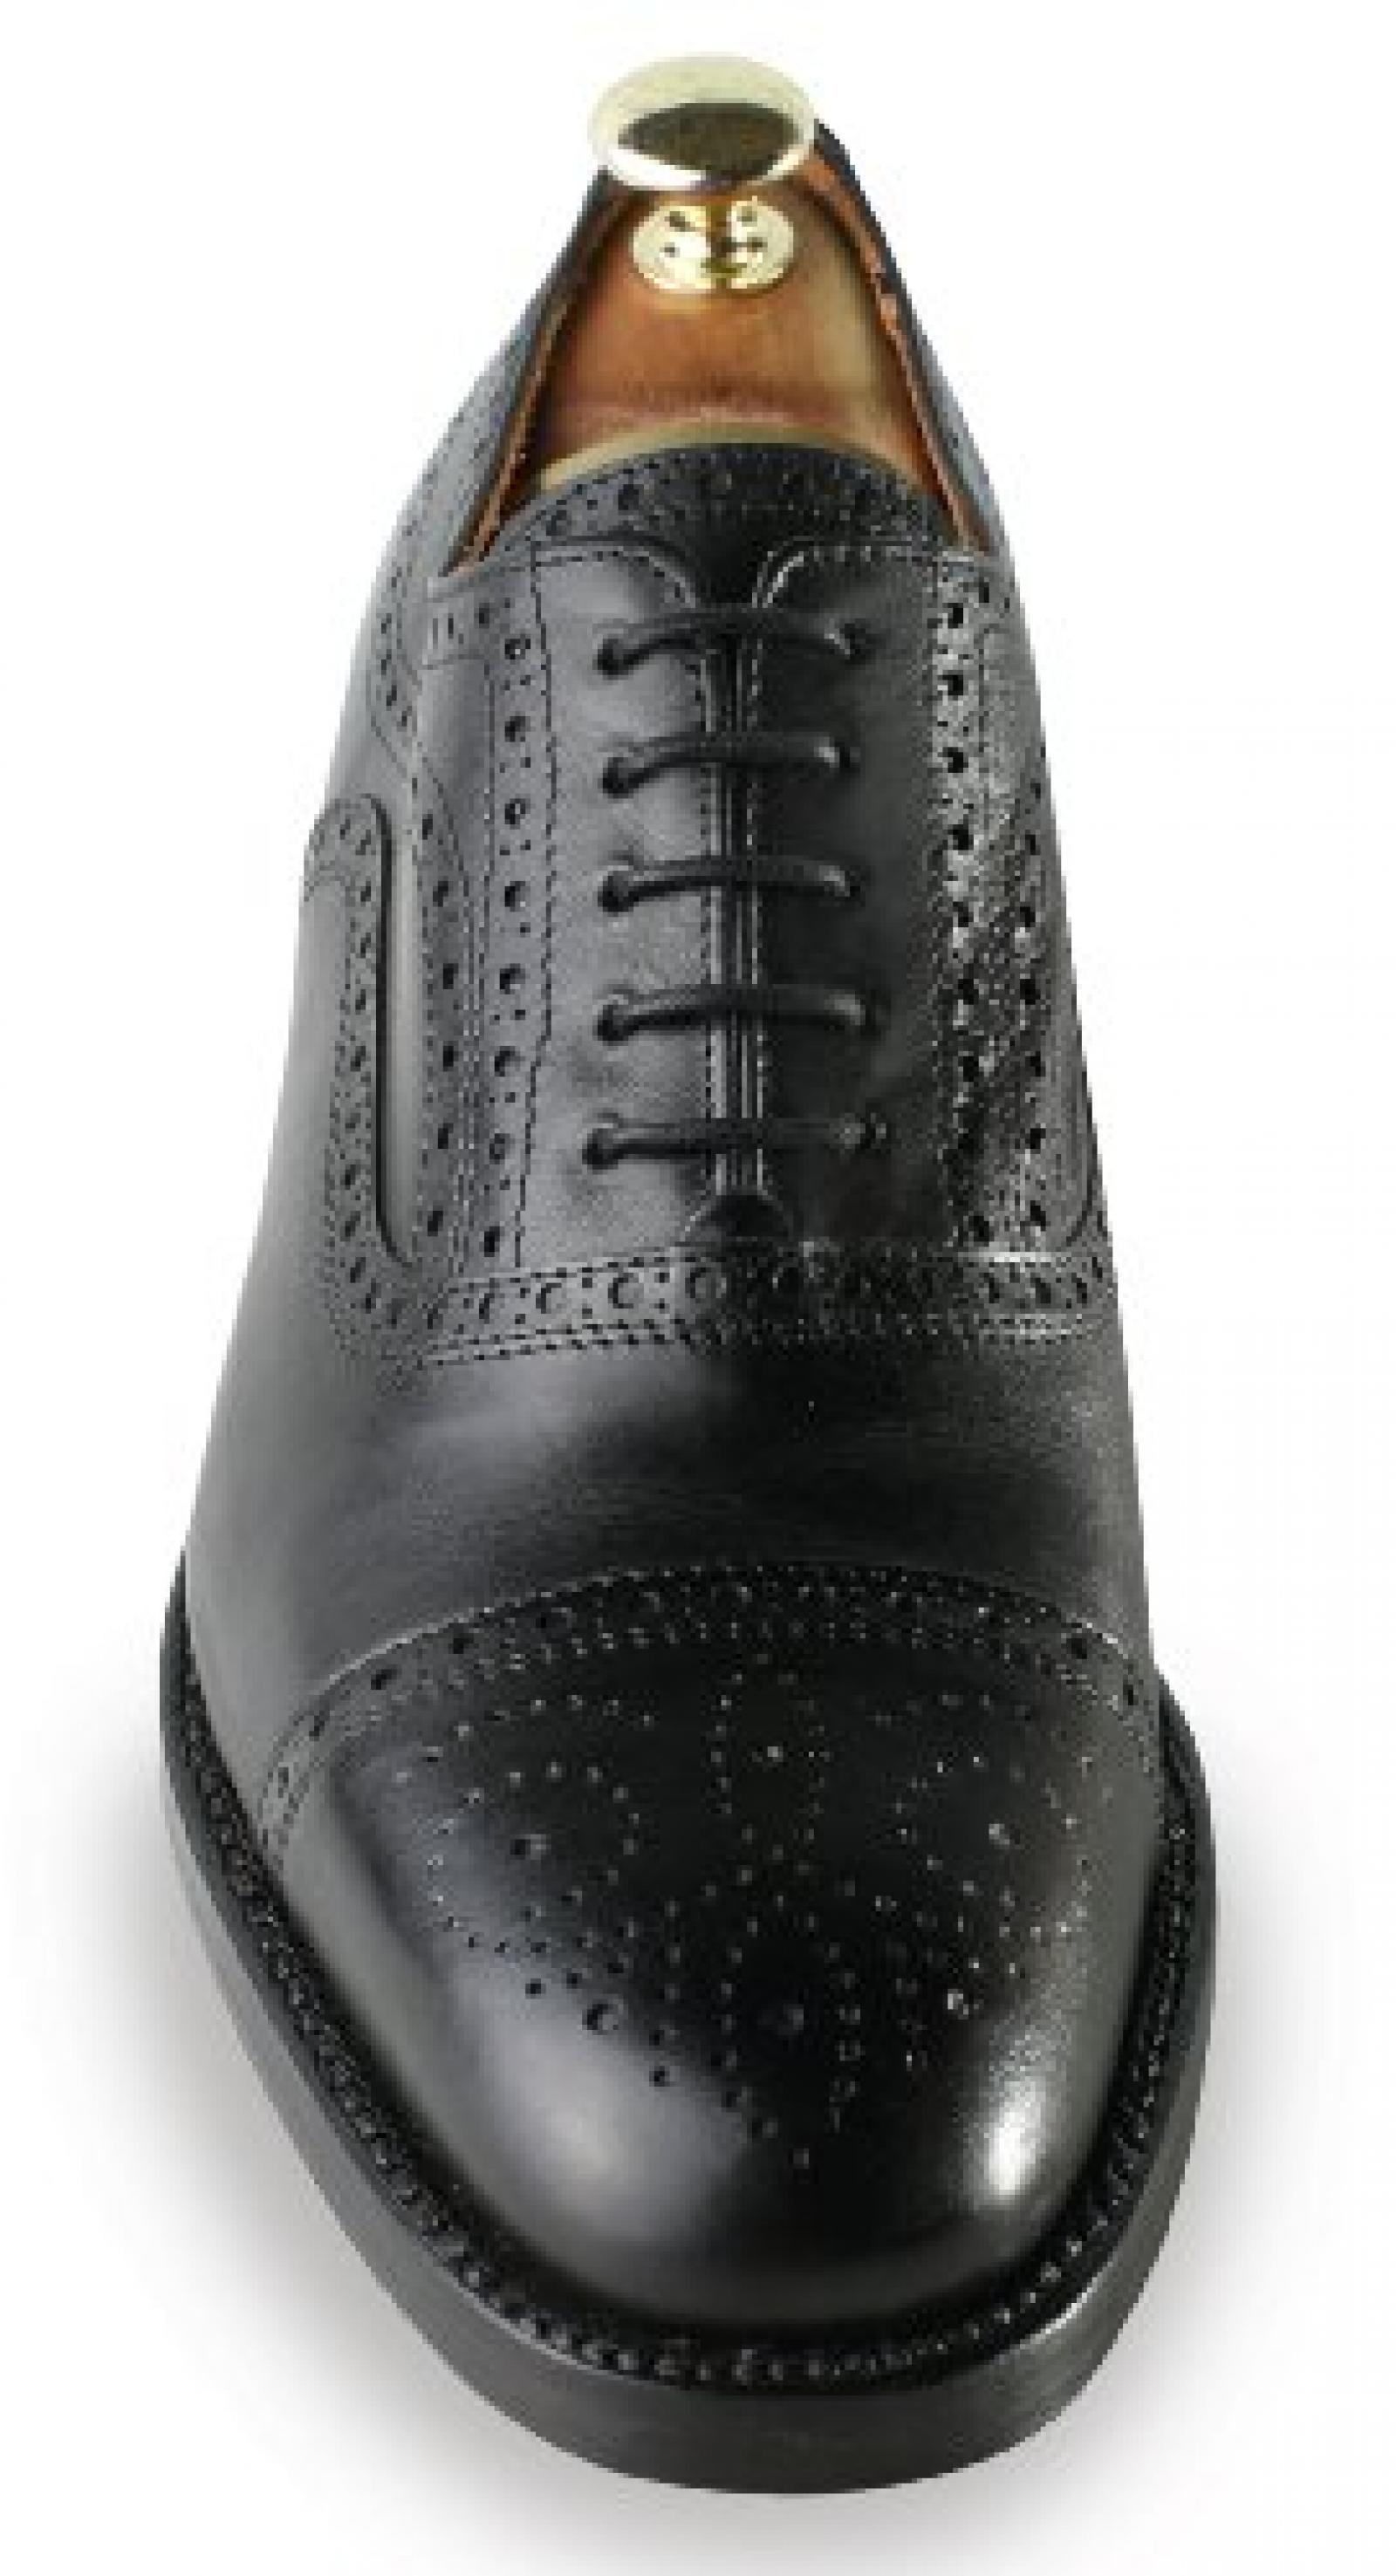 Masaltos - Schuhe für Männer erhöhen auf unsichtbare Weise Ihre Körpergrösse bis zu 7 cm. Modell Basilea 